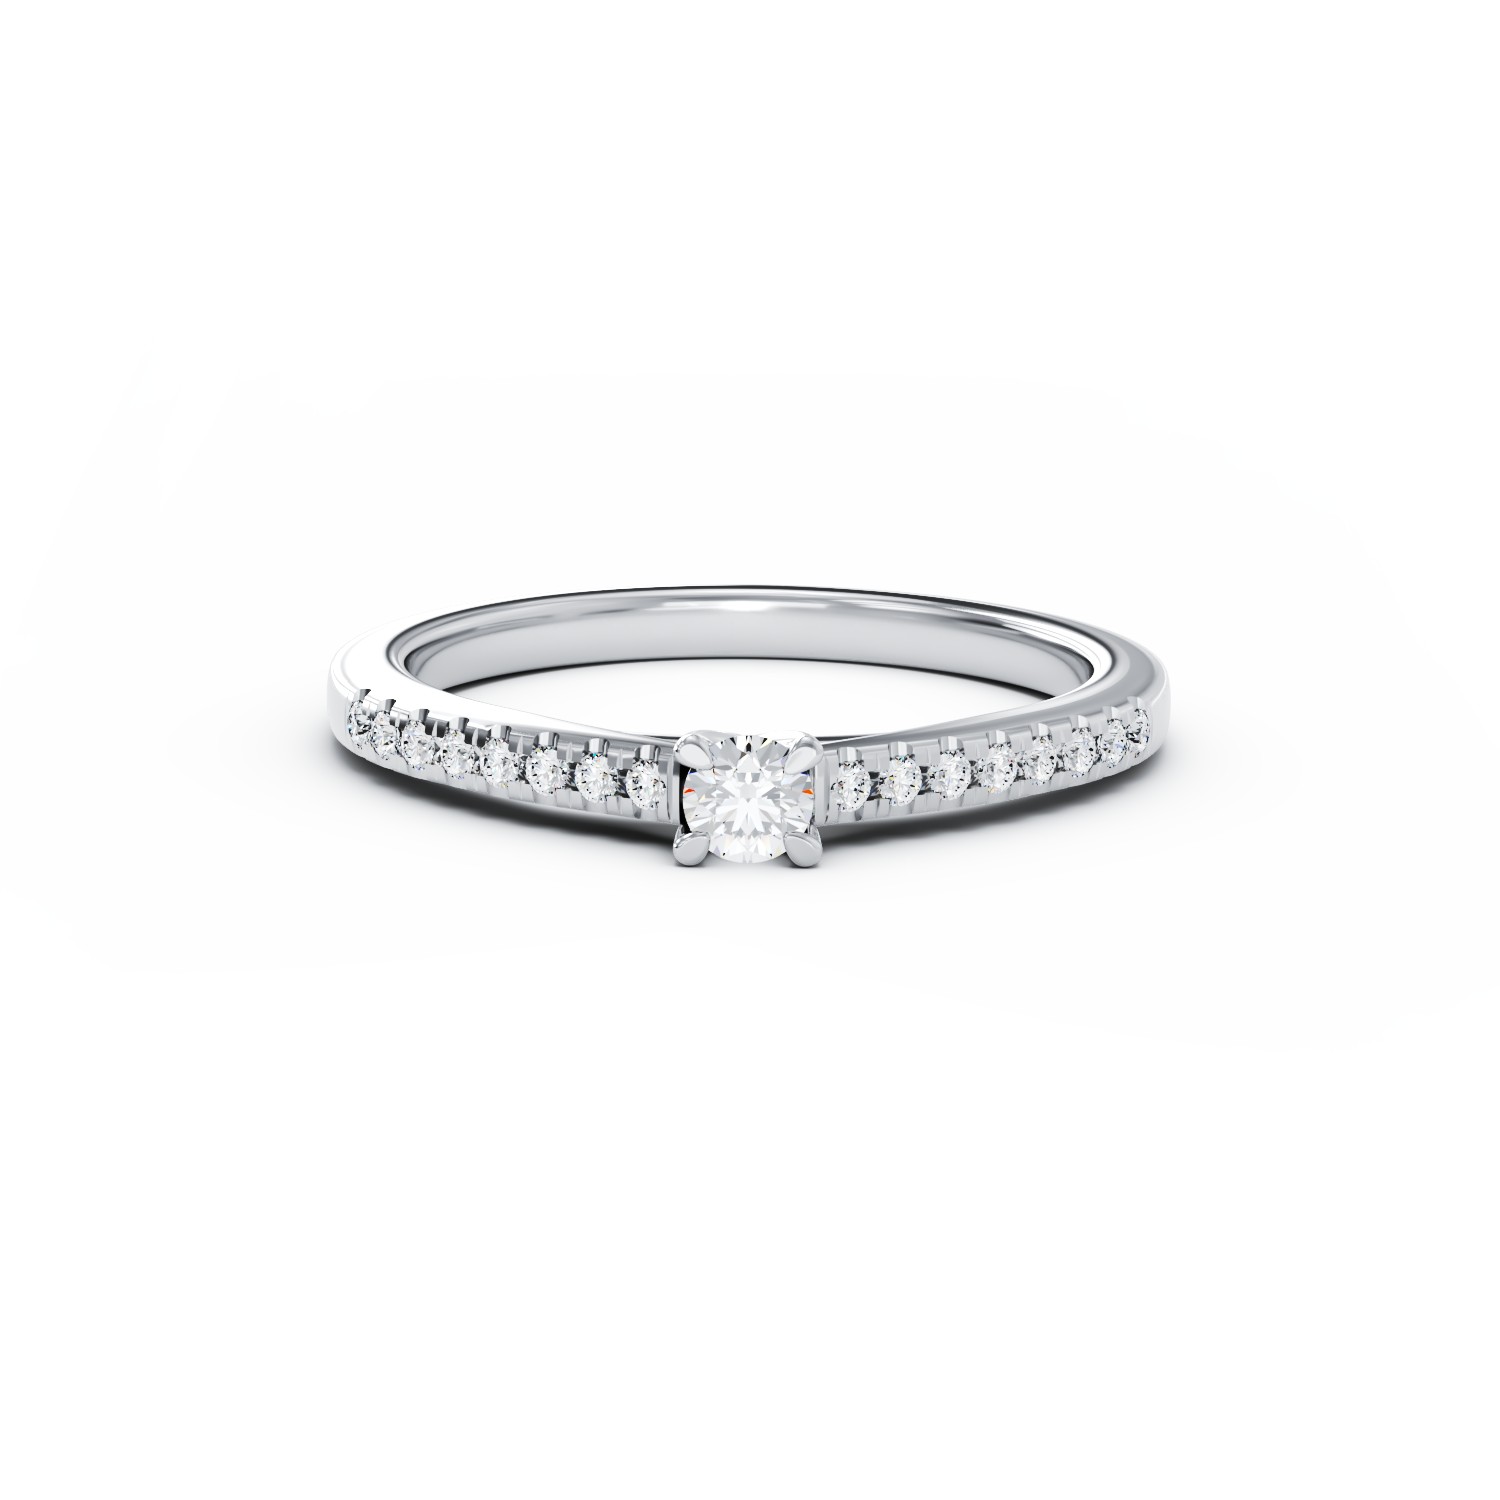 Eljegyzési gyűrű 18K-os fehér aranyból 0,104ct gyémánttal és 0,15ct gyémánttal. Gramm: 2,05